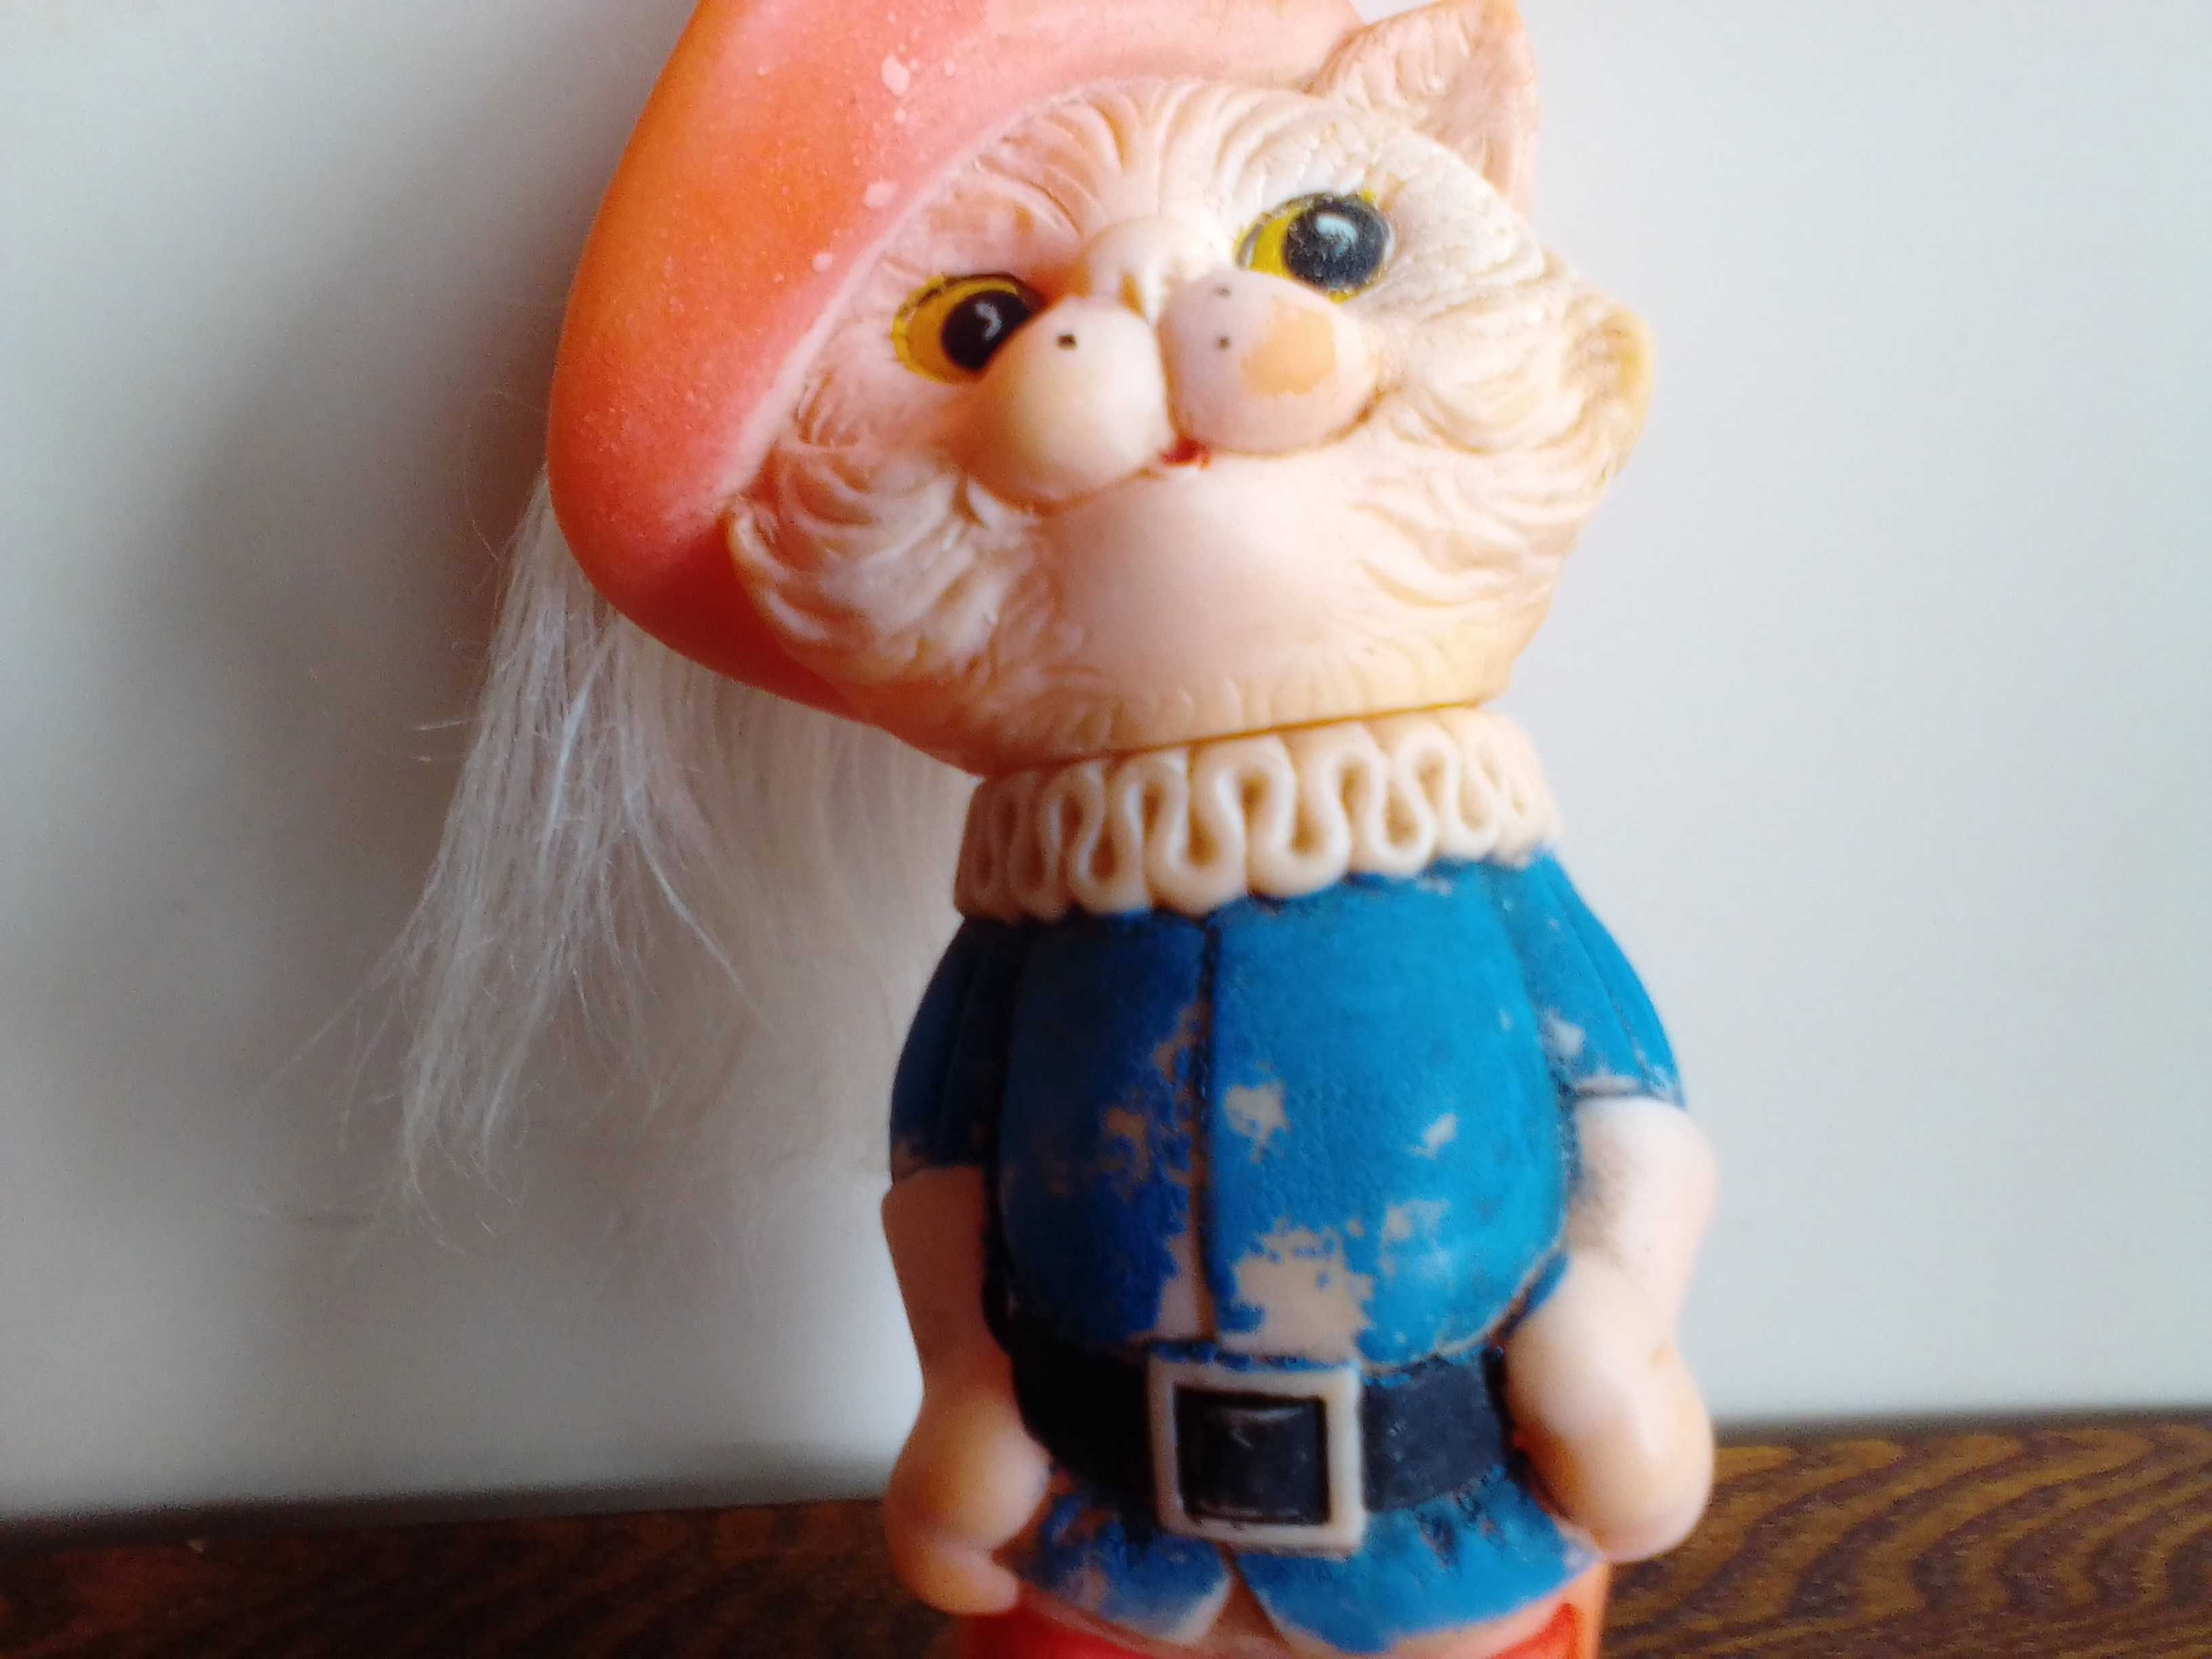 Резиновая игрушка «Кот в сапогах», 22.5 см, СССР, 80-е годы.